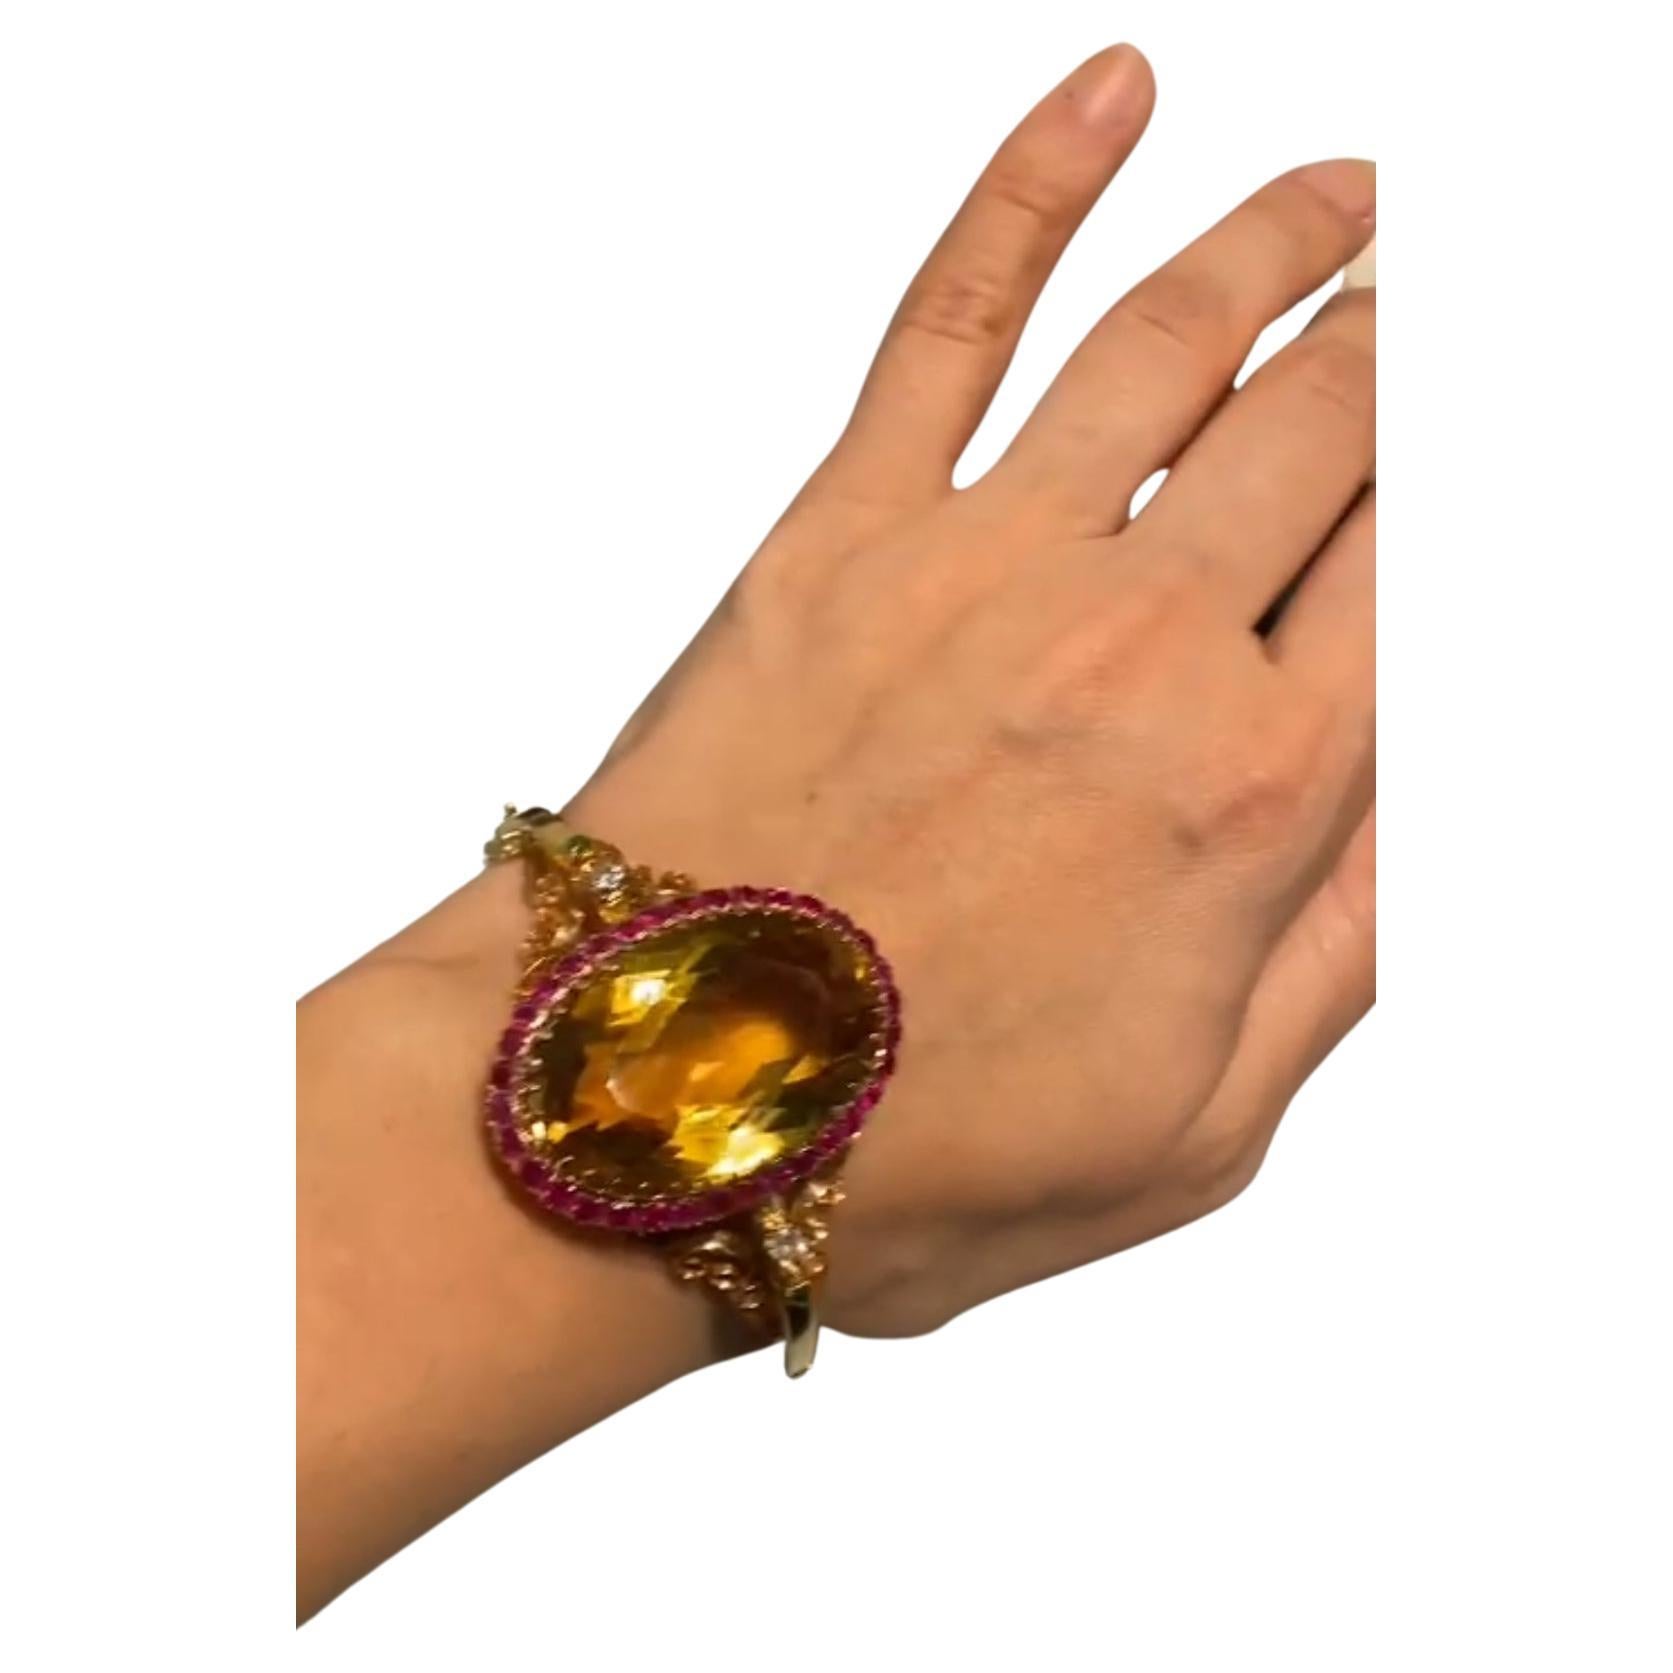 Antike 18k Gold Armband mit großen Citrin Stein mit einem Durchmesser von 37mm×27mm geschätzten Gewicht 70 Karat lupenrein in ausgezeichneten Facetten und Funken flankiert mit natürlichen roten Rubinen und 2 alten Diamanten und grünen Smaragden in